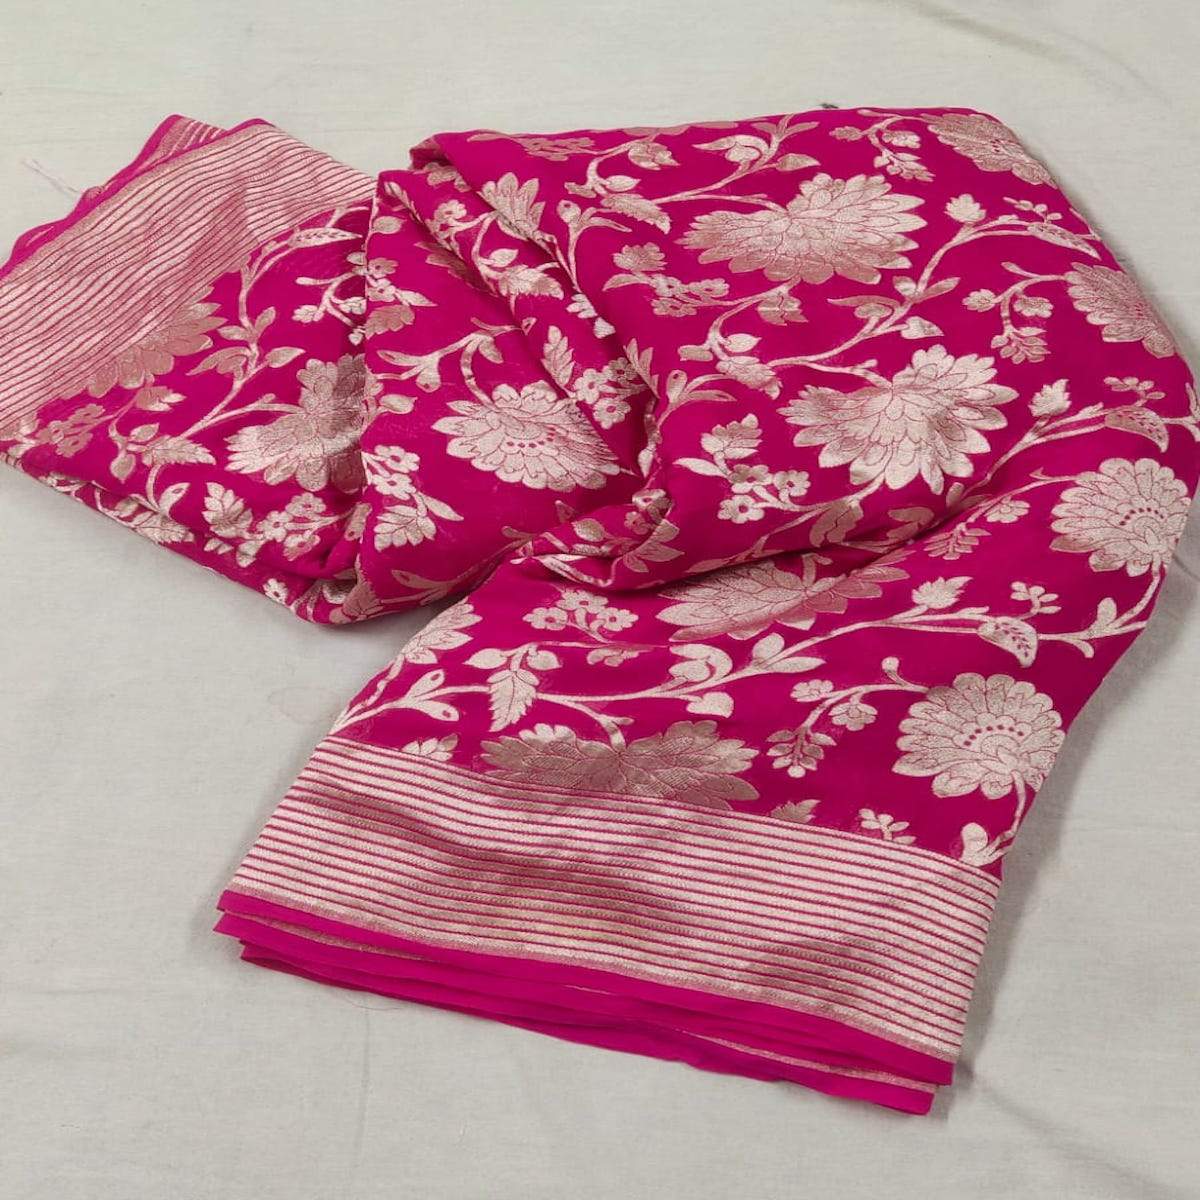 Dark Pink Banarasi Saree With Flower Jaal - jhakhas.com